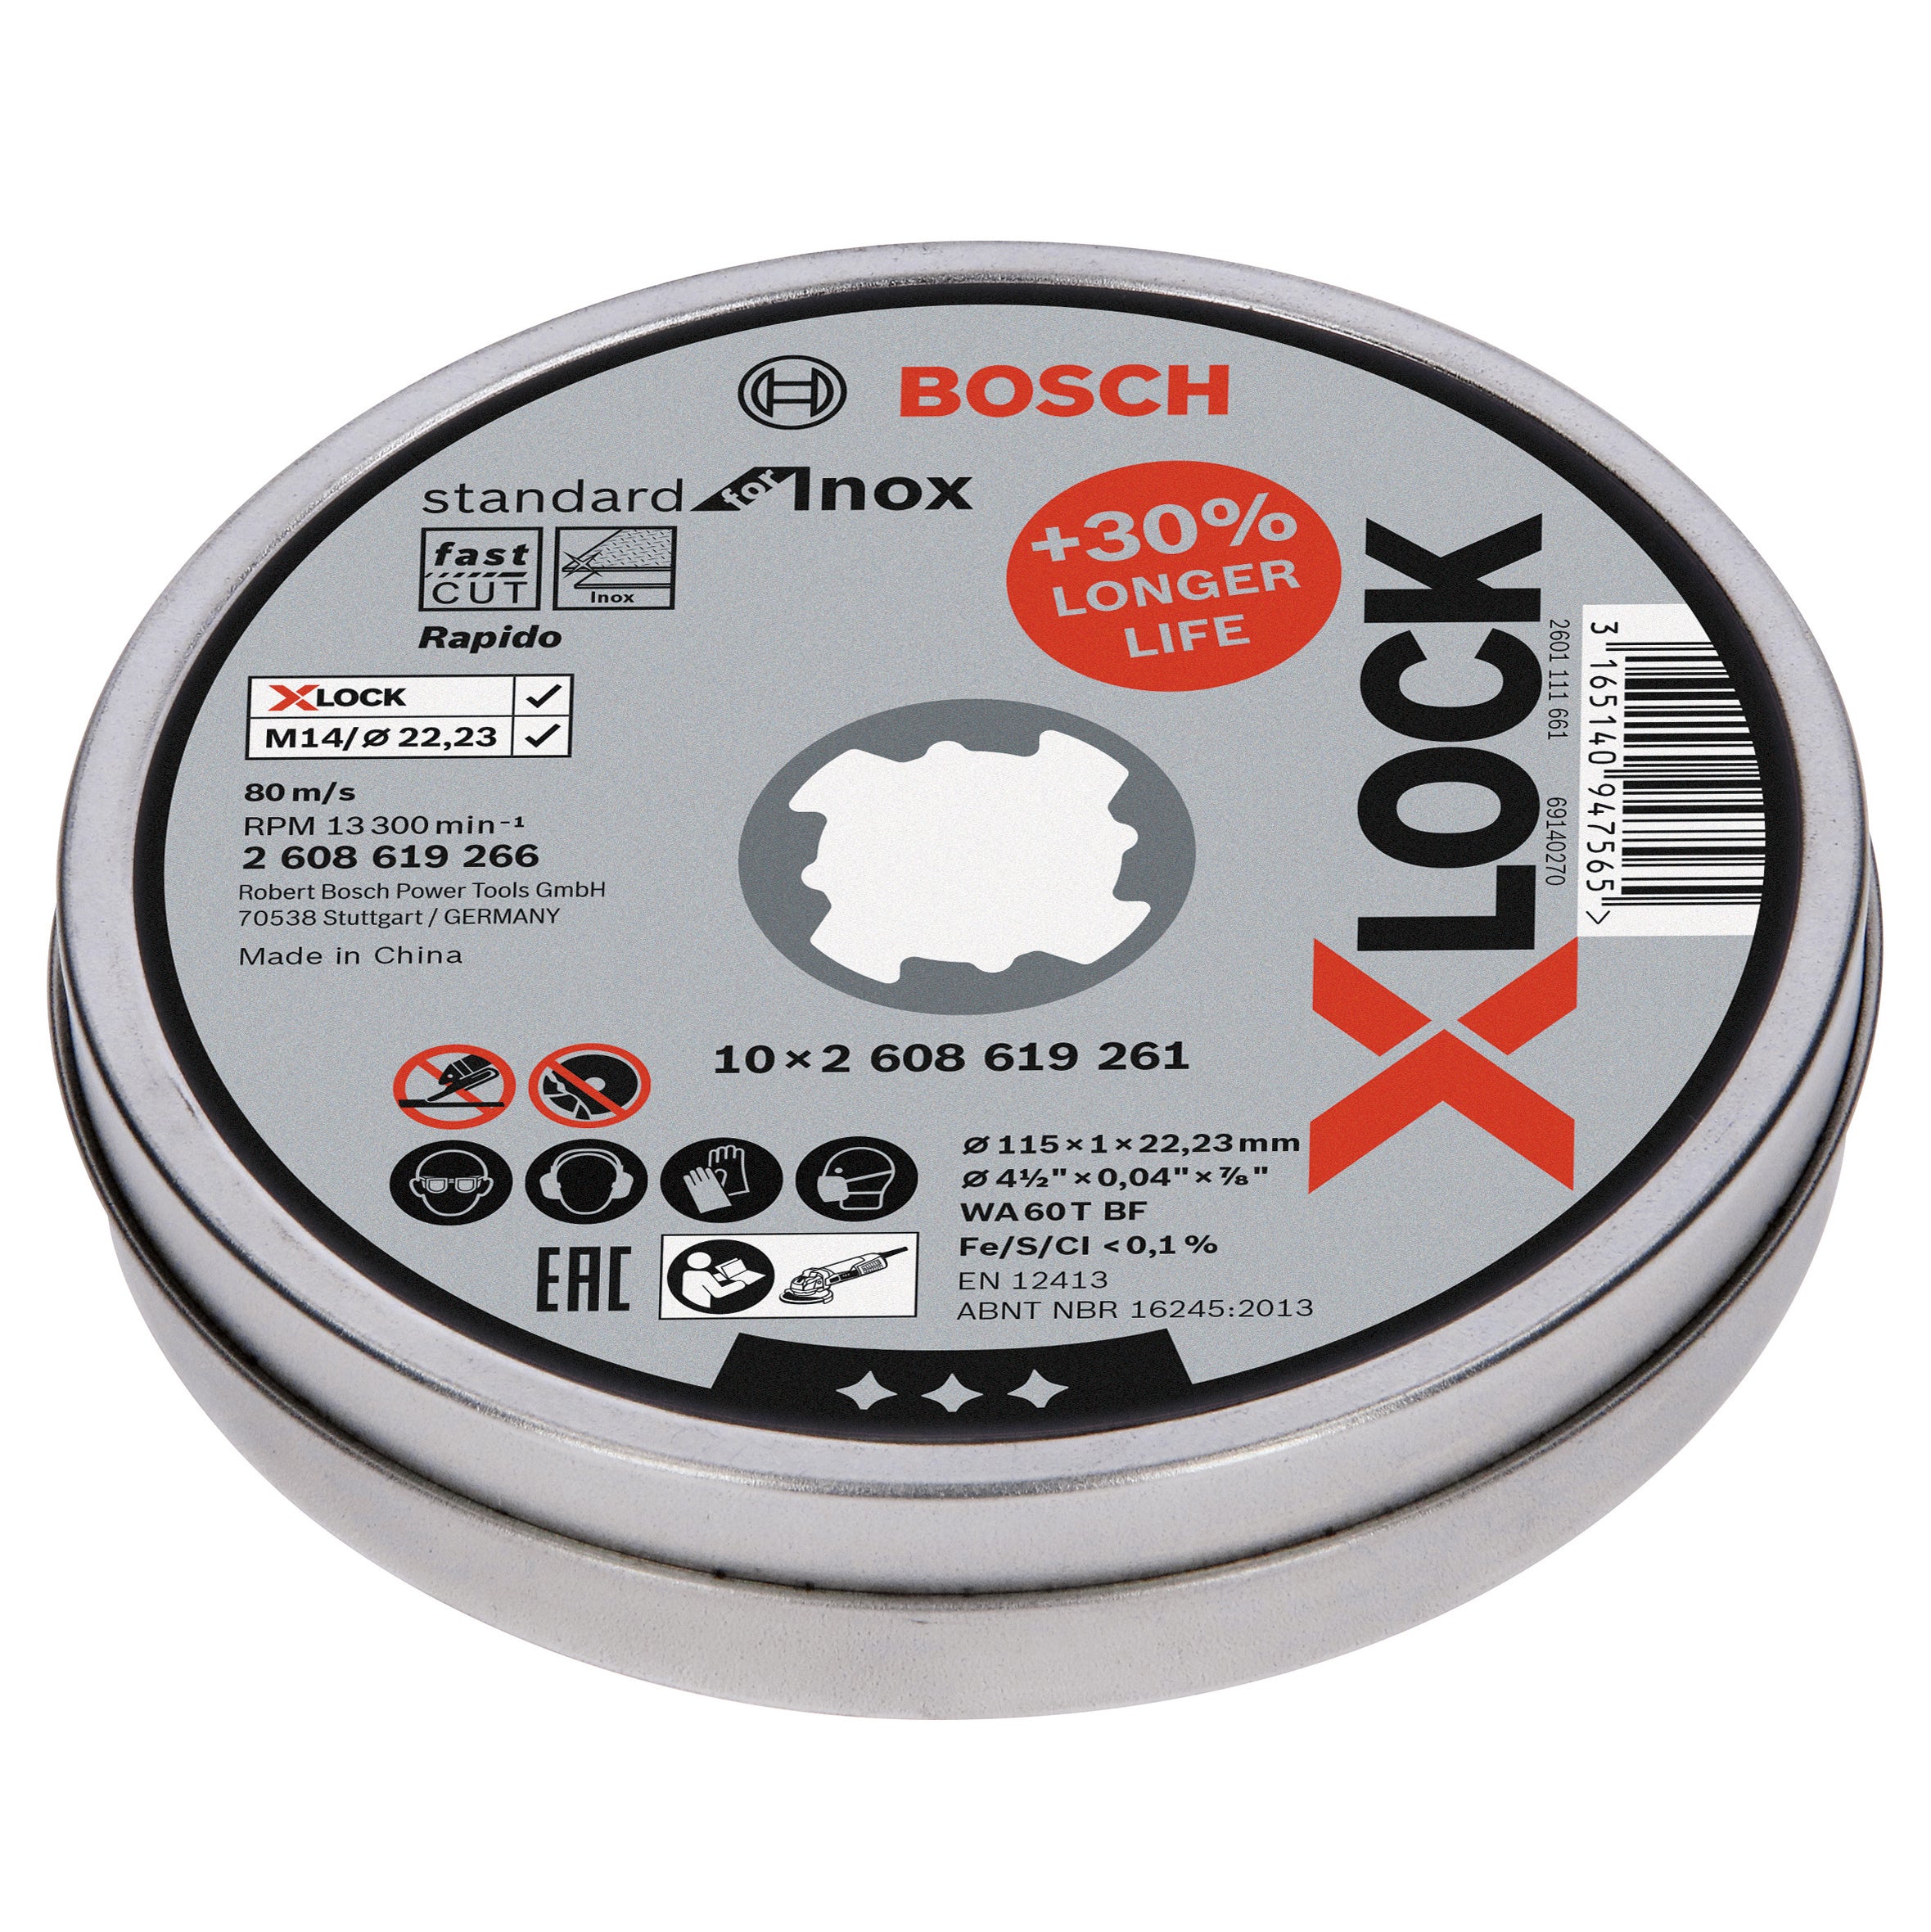 BOSCH-B 10 DISCHI PER INOX X-LOCKMM.115X1,0 BOSCH PZ 1,0